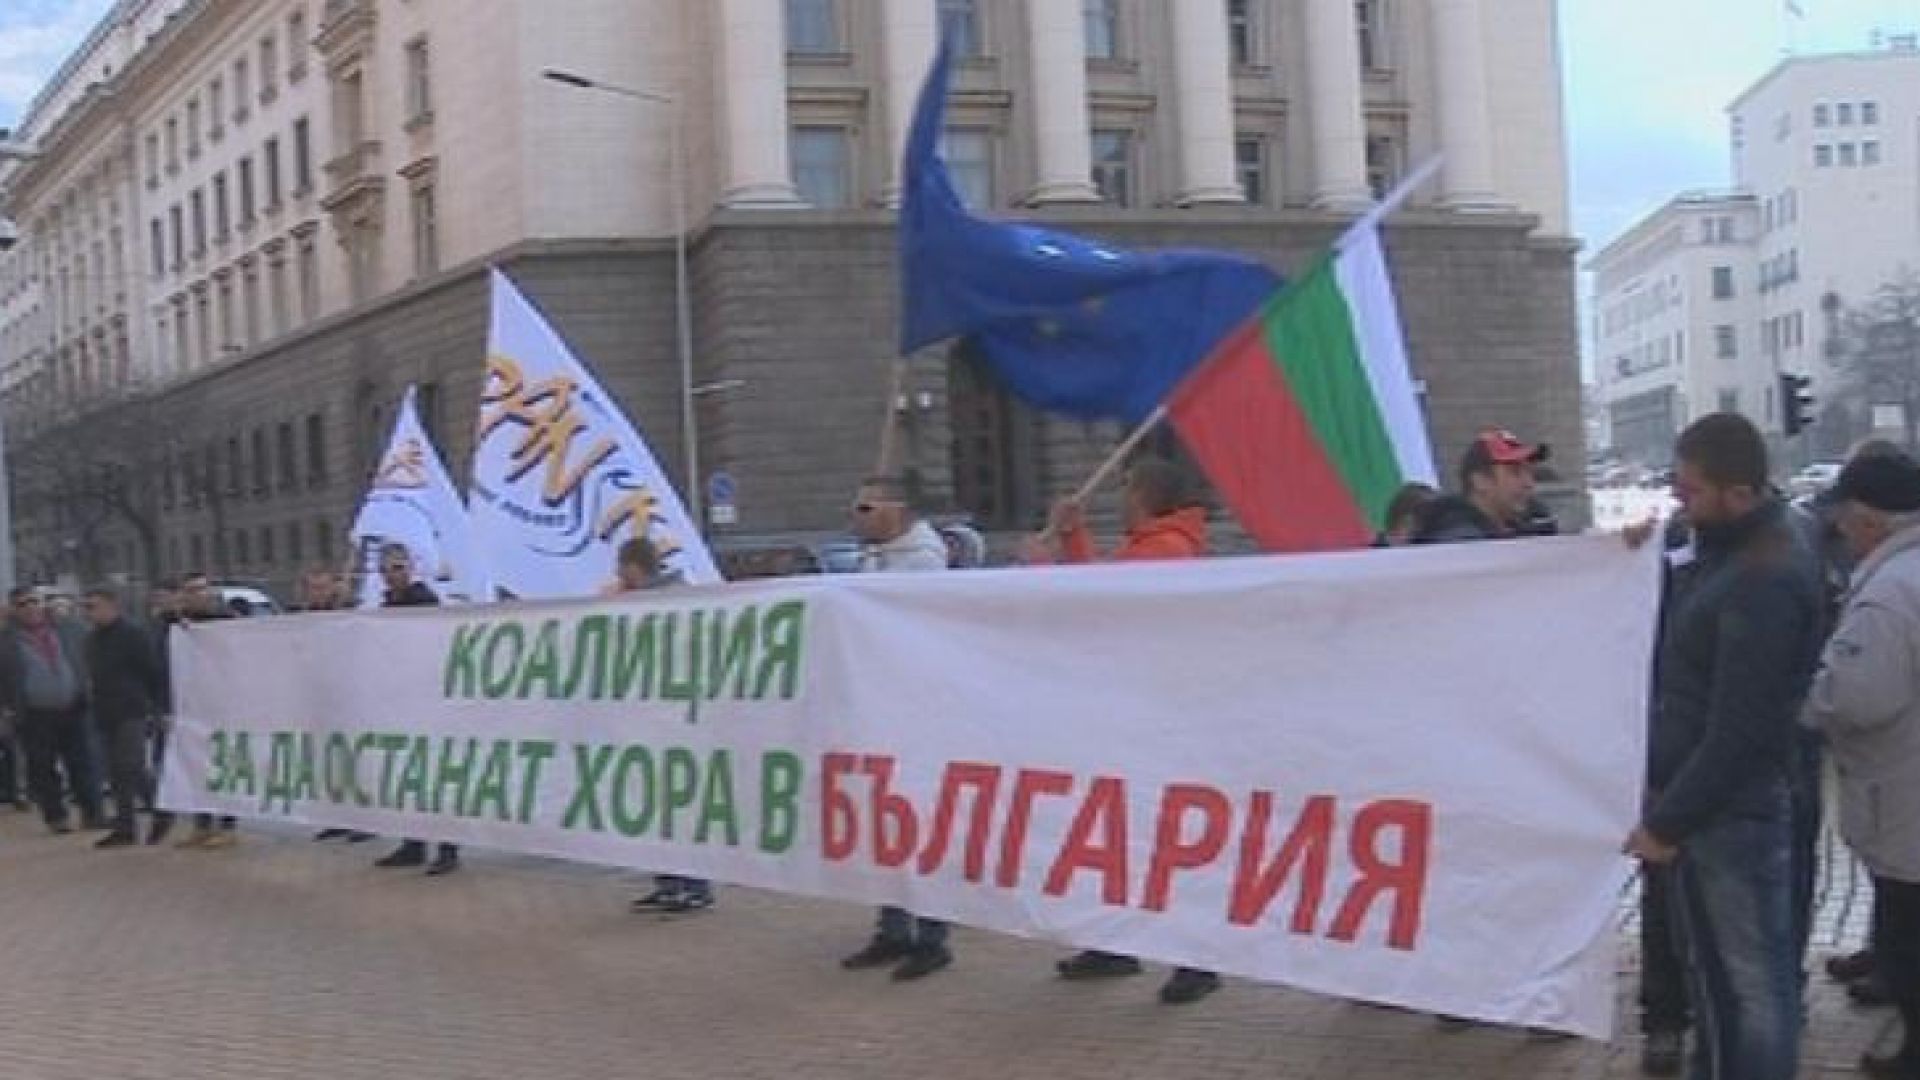 Коалицията За да останат хора в България и още 10